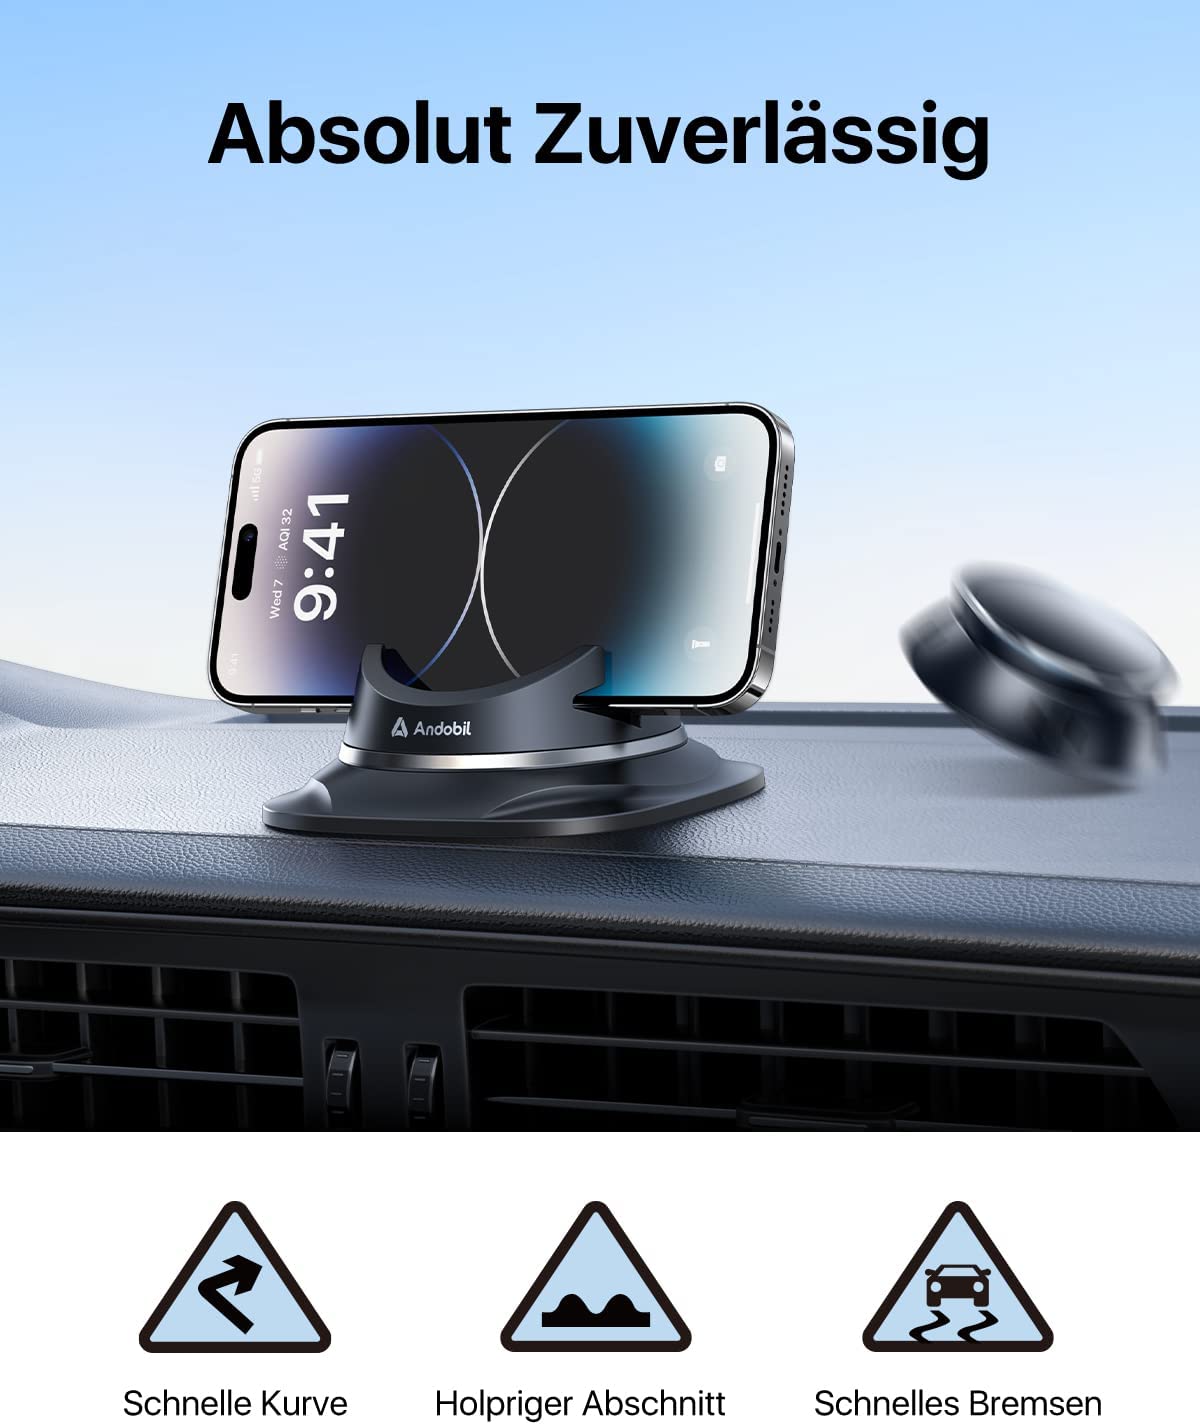 TORRAS Handyhalterung Auto Lüftung & Saugnapf, 3 in 1 Universale Kfz  Handyhalterung 360° Drehbar Autohalterung Handy Halterung für Auto  Smartphone